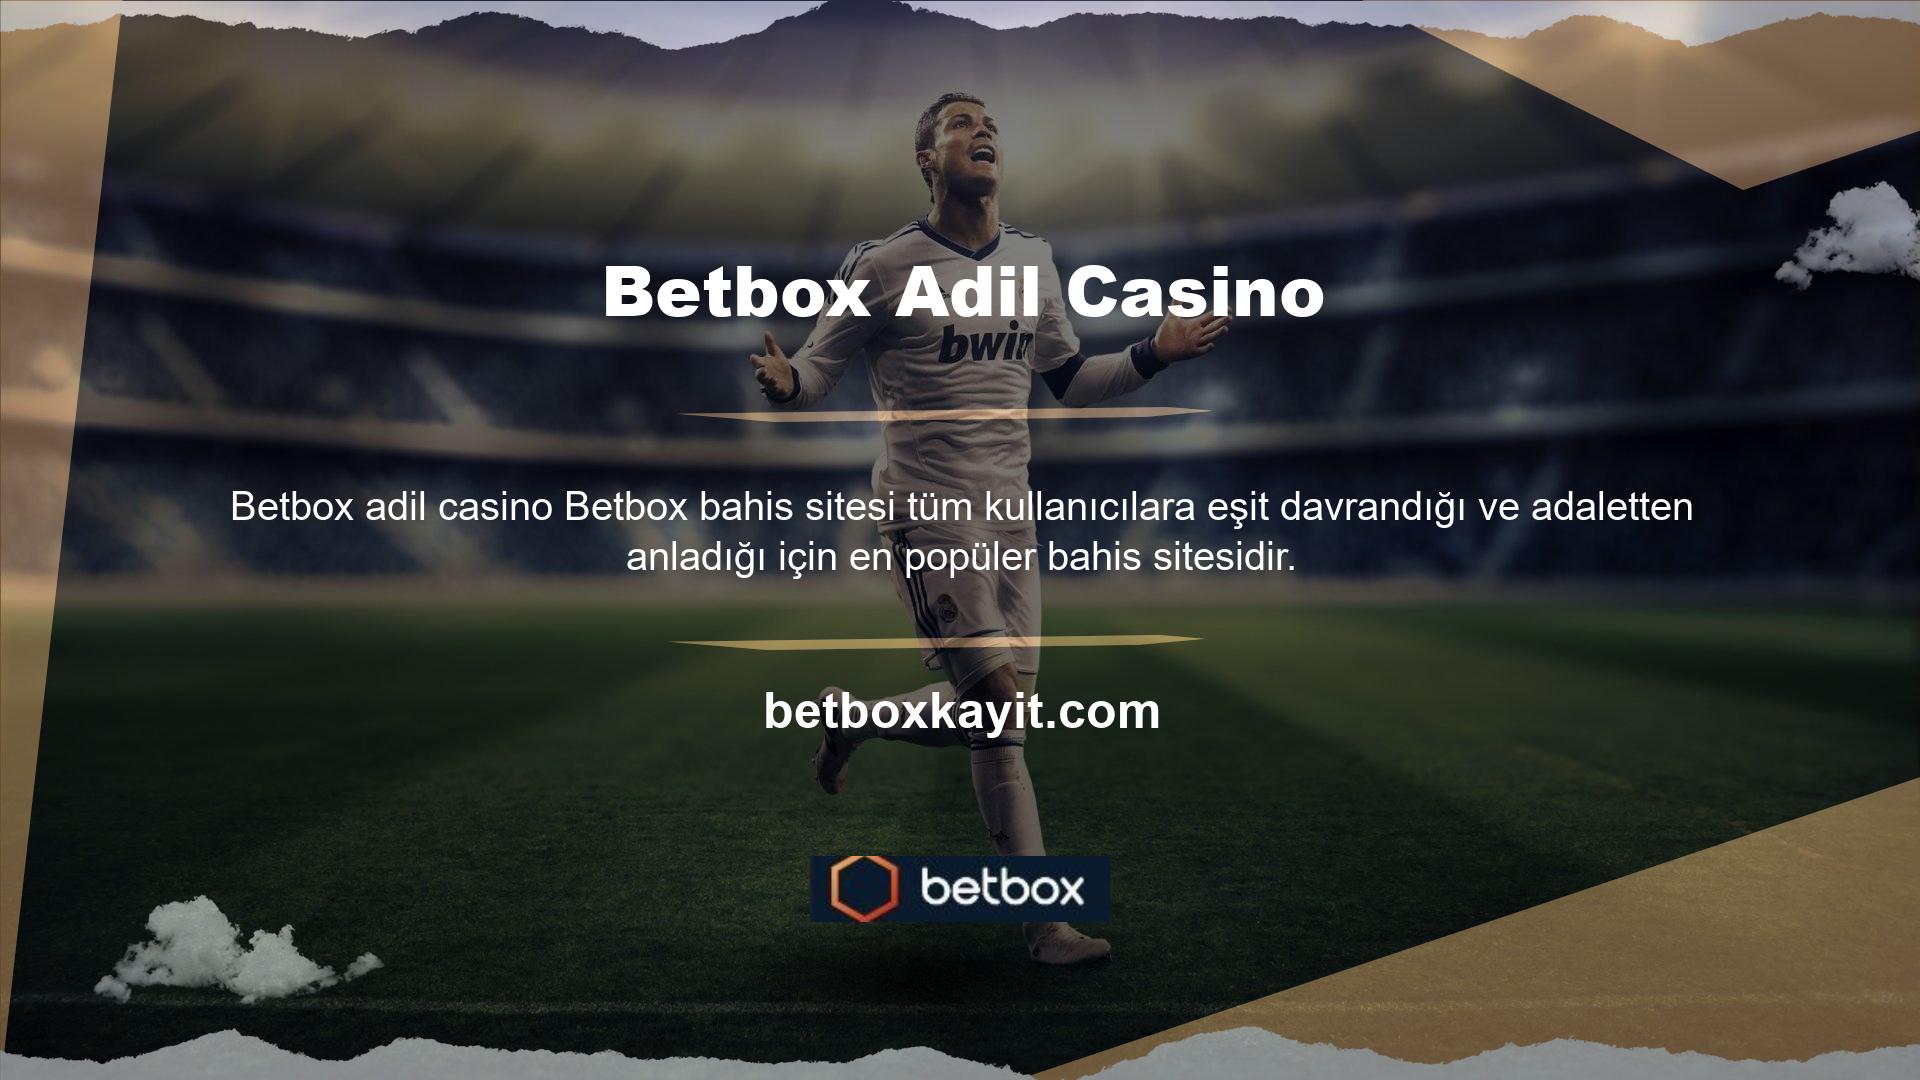 Betbox Bahis Sitesi, Betbox Login, internette canlı bahis ve casino oyunları gibi hizmetler sunmaya devam etmeye karar vermiş bir casino şirketidir